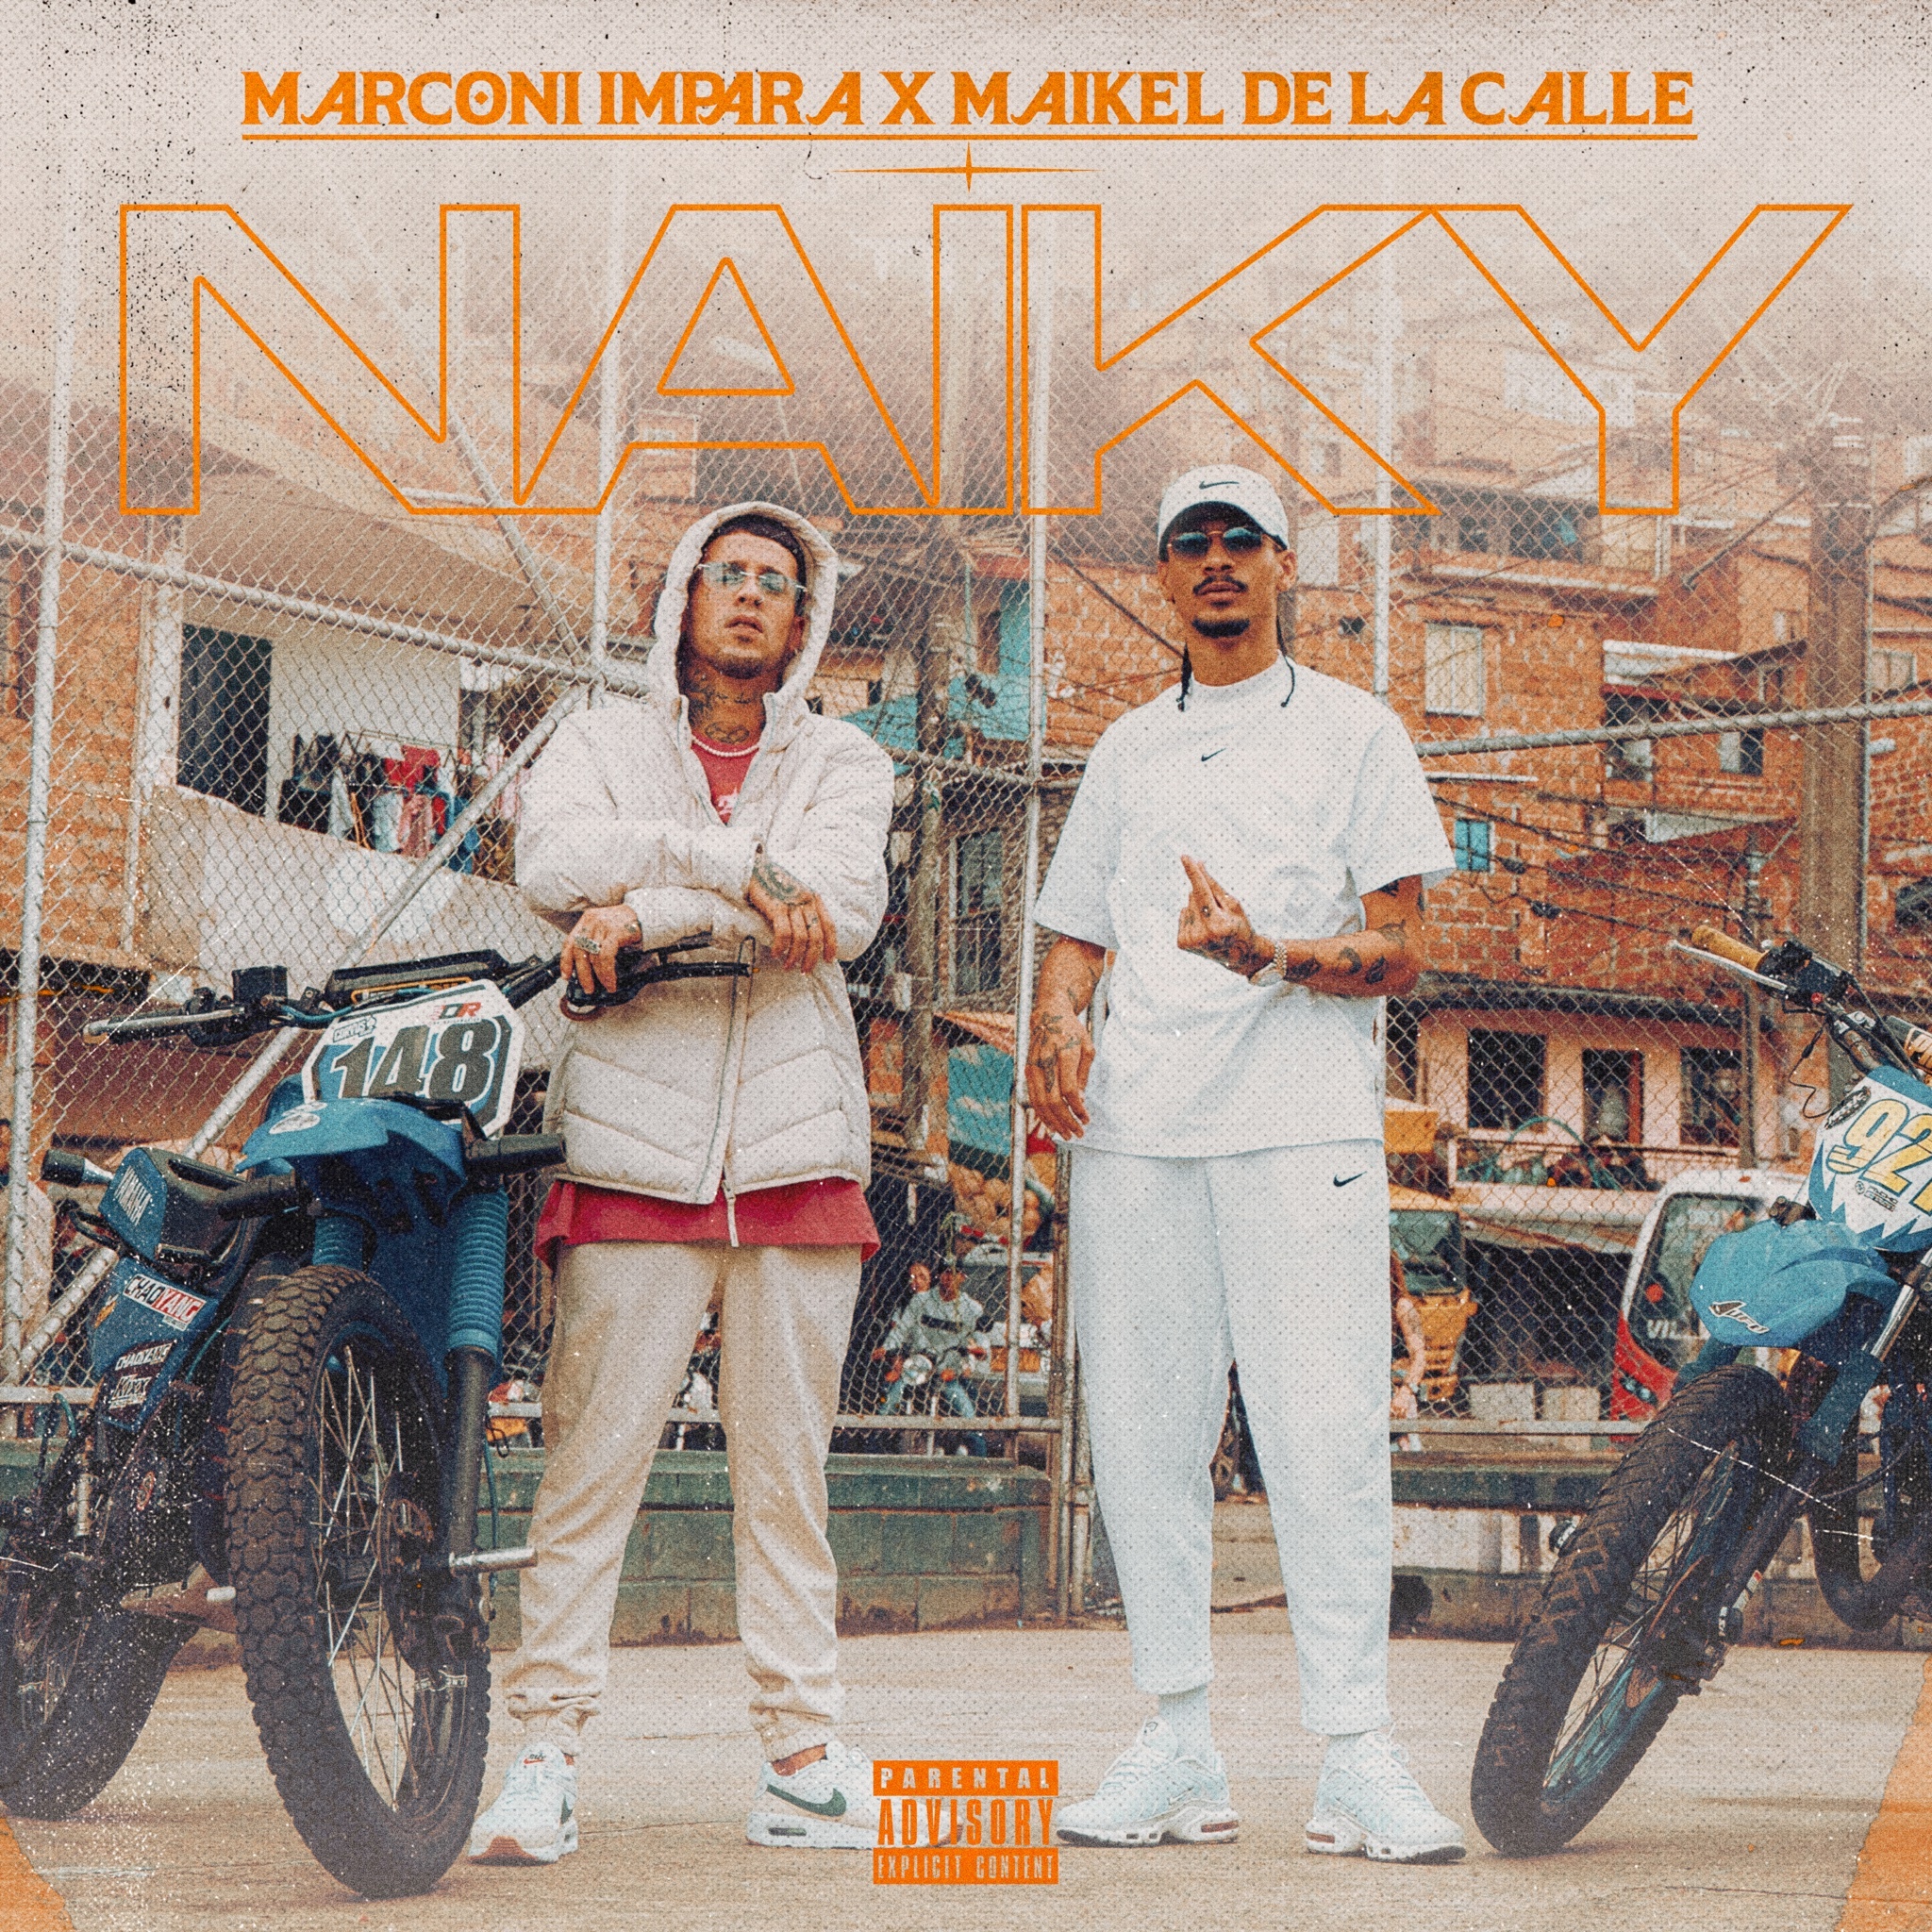 MARCONI IMPARA se une a MAIKEL DELACALLE  en sencillo “Naiky”